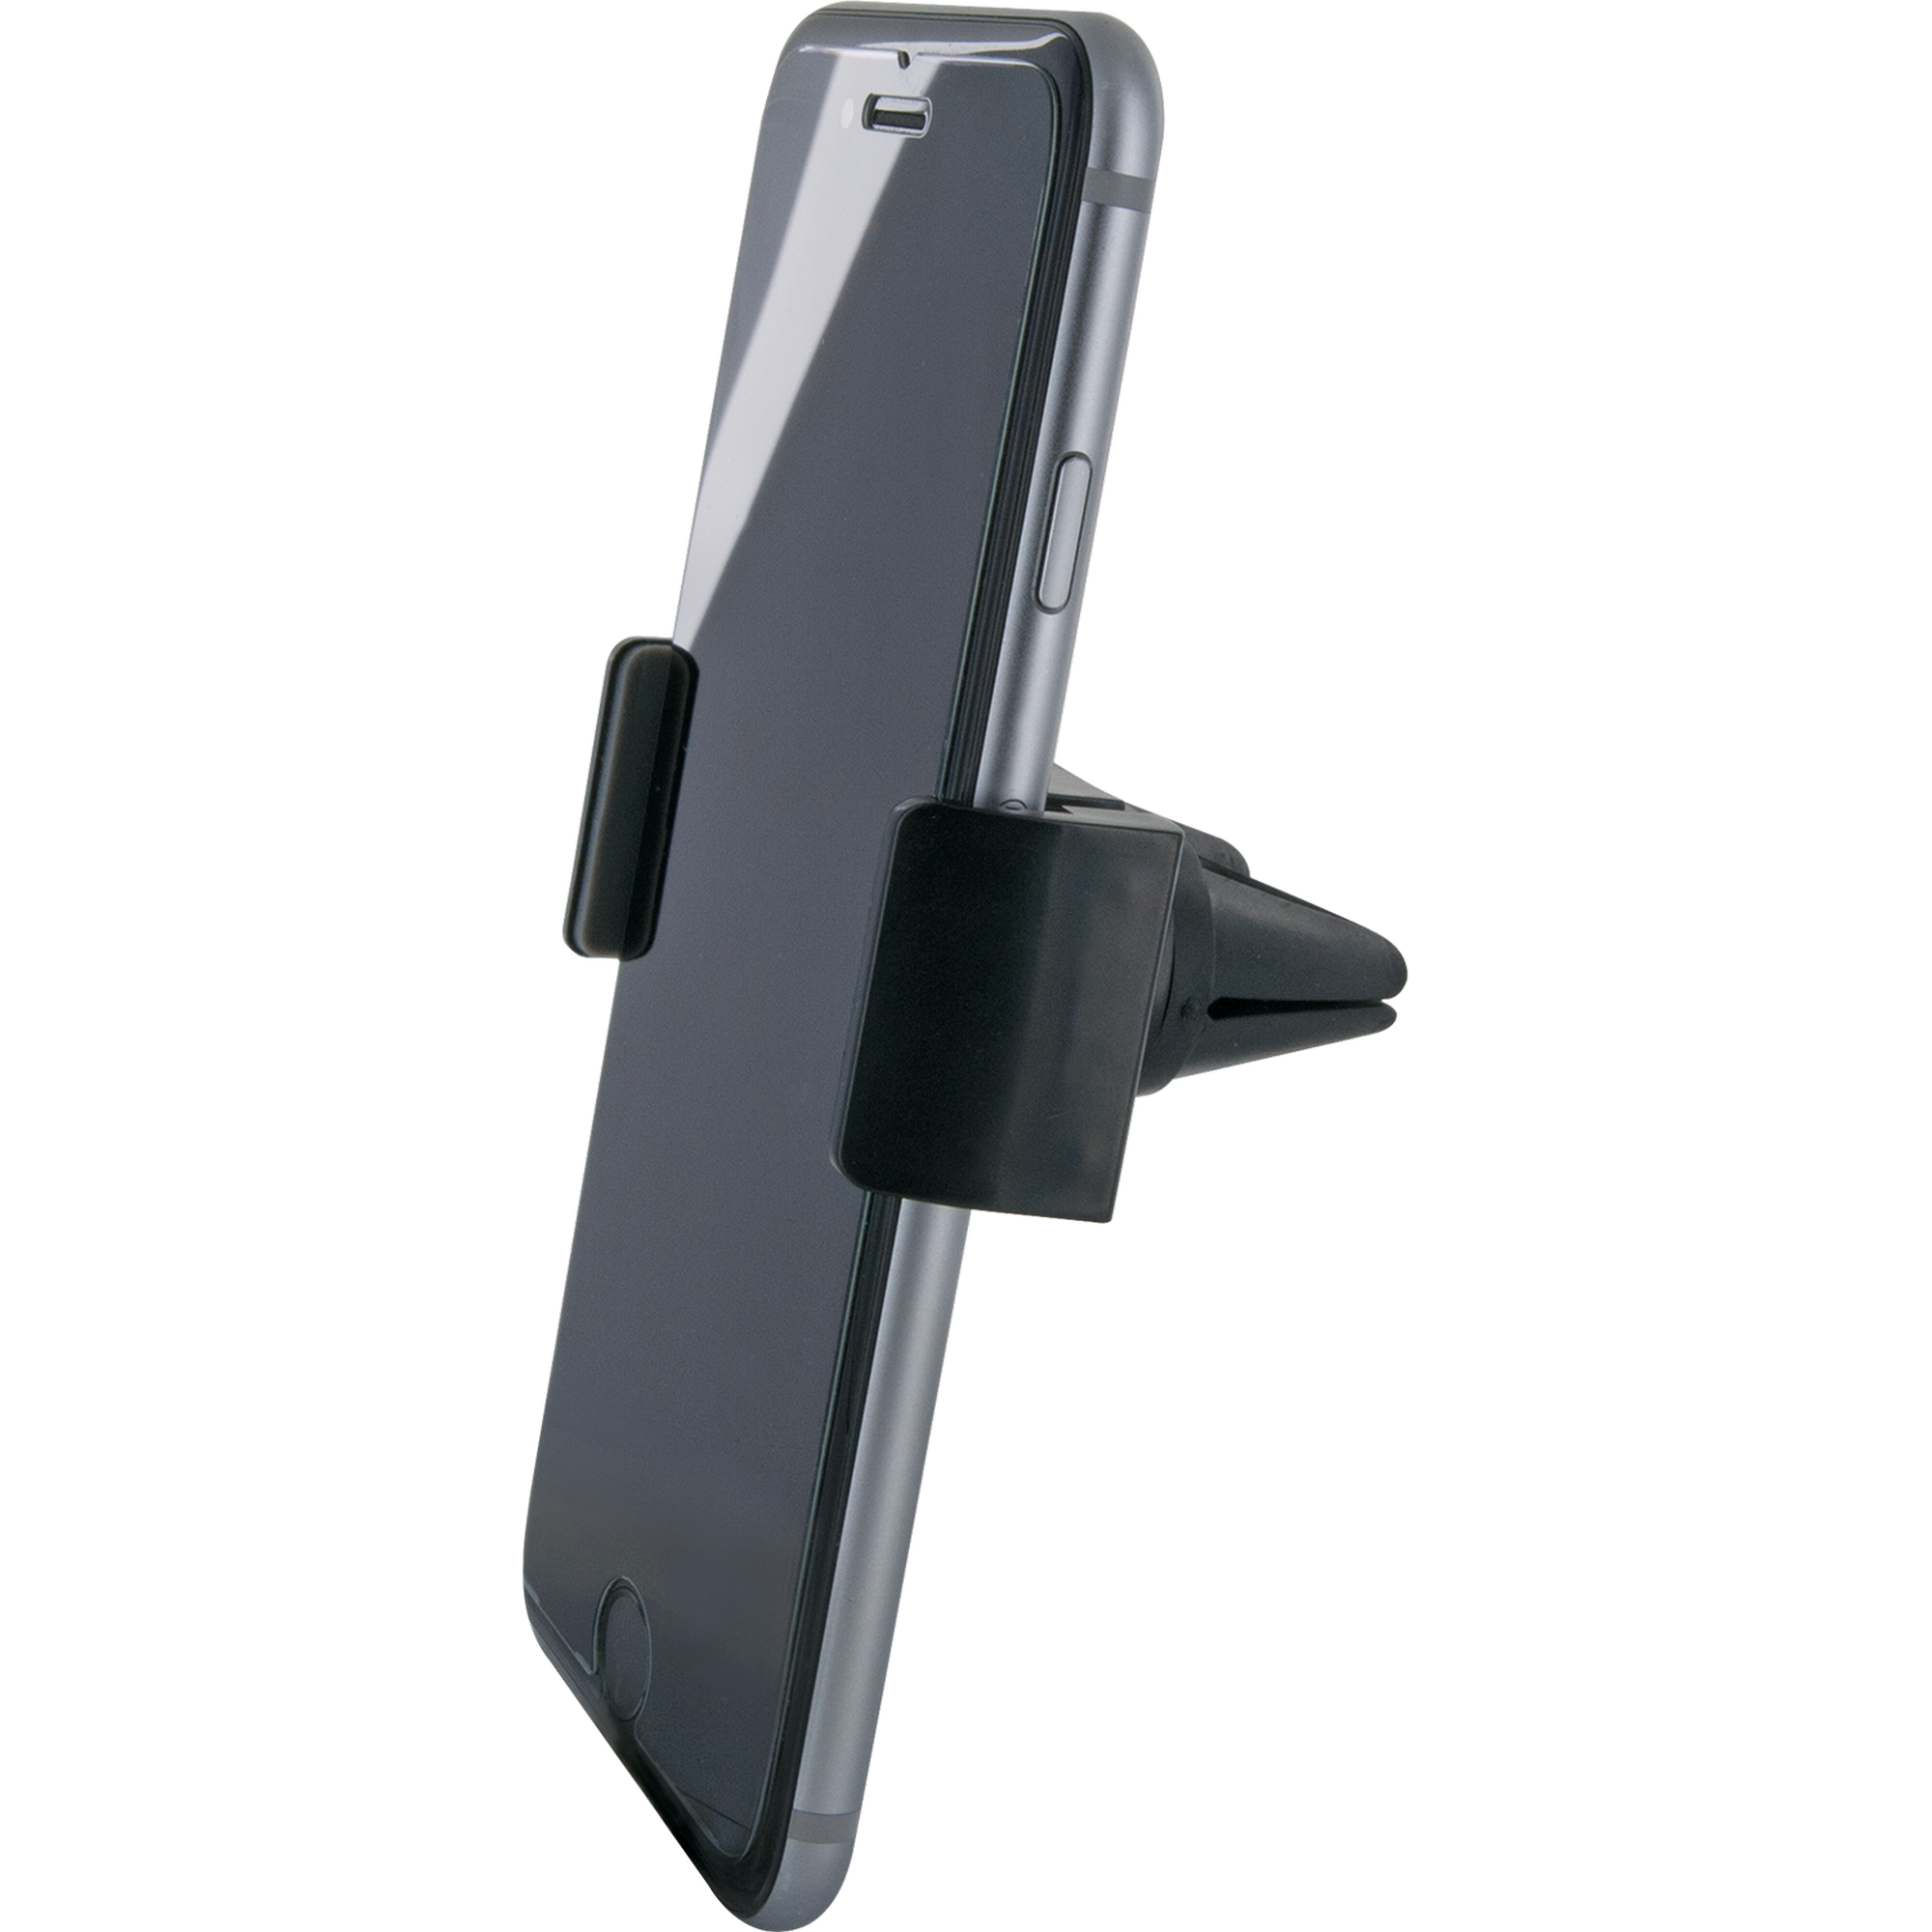 KFZ-Halterung 'LHSP300 513' für Smartphones + product picture